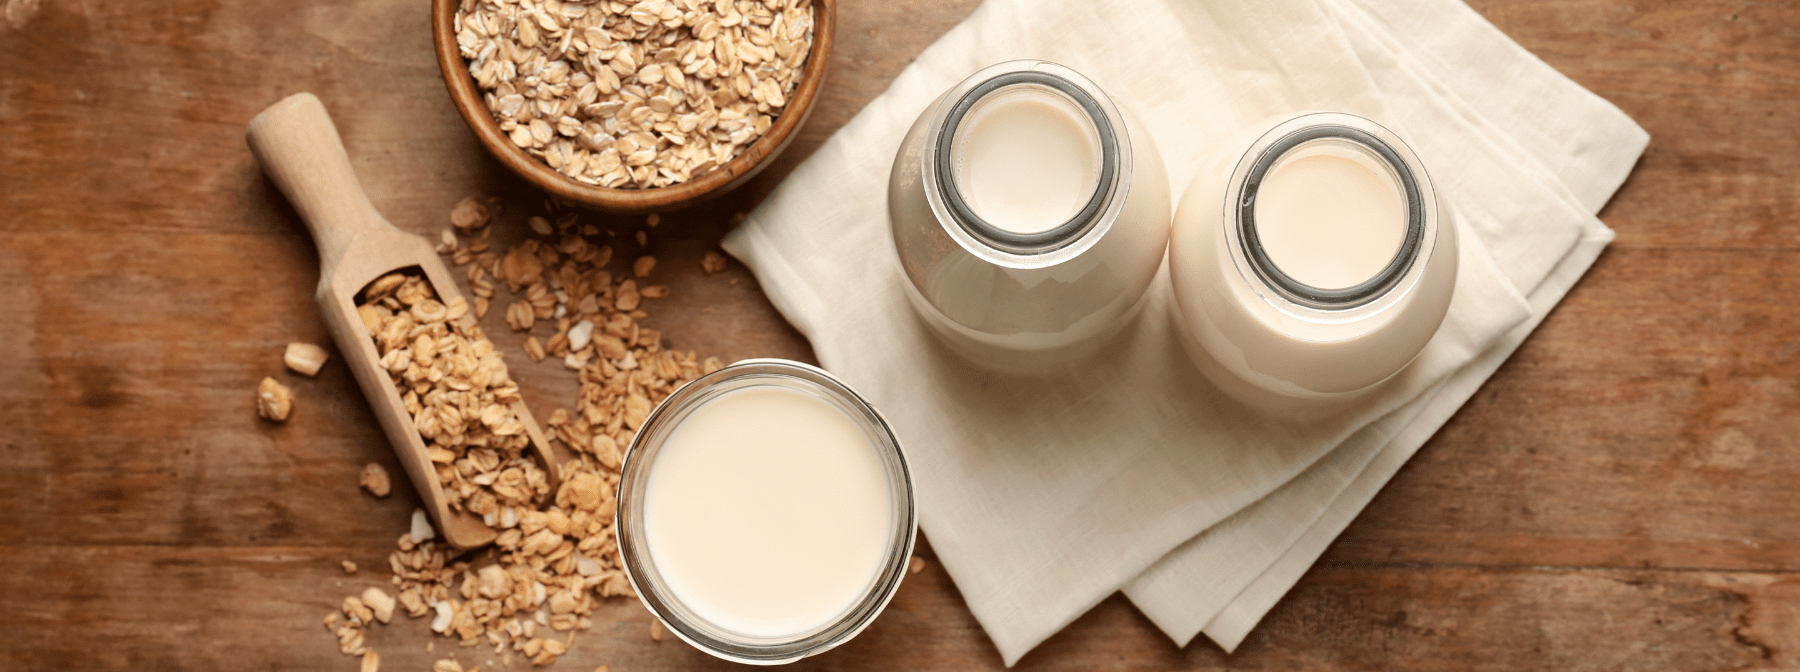 Latte di Avena | Il latte senza lattosio